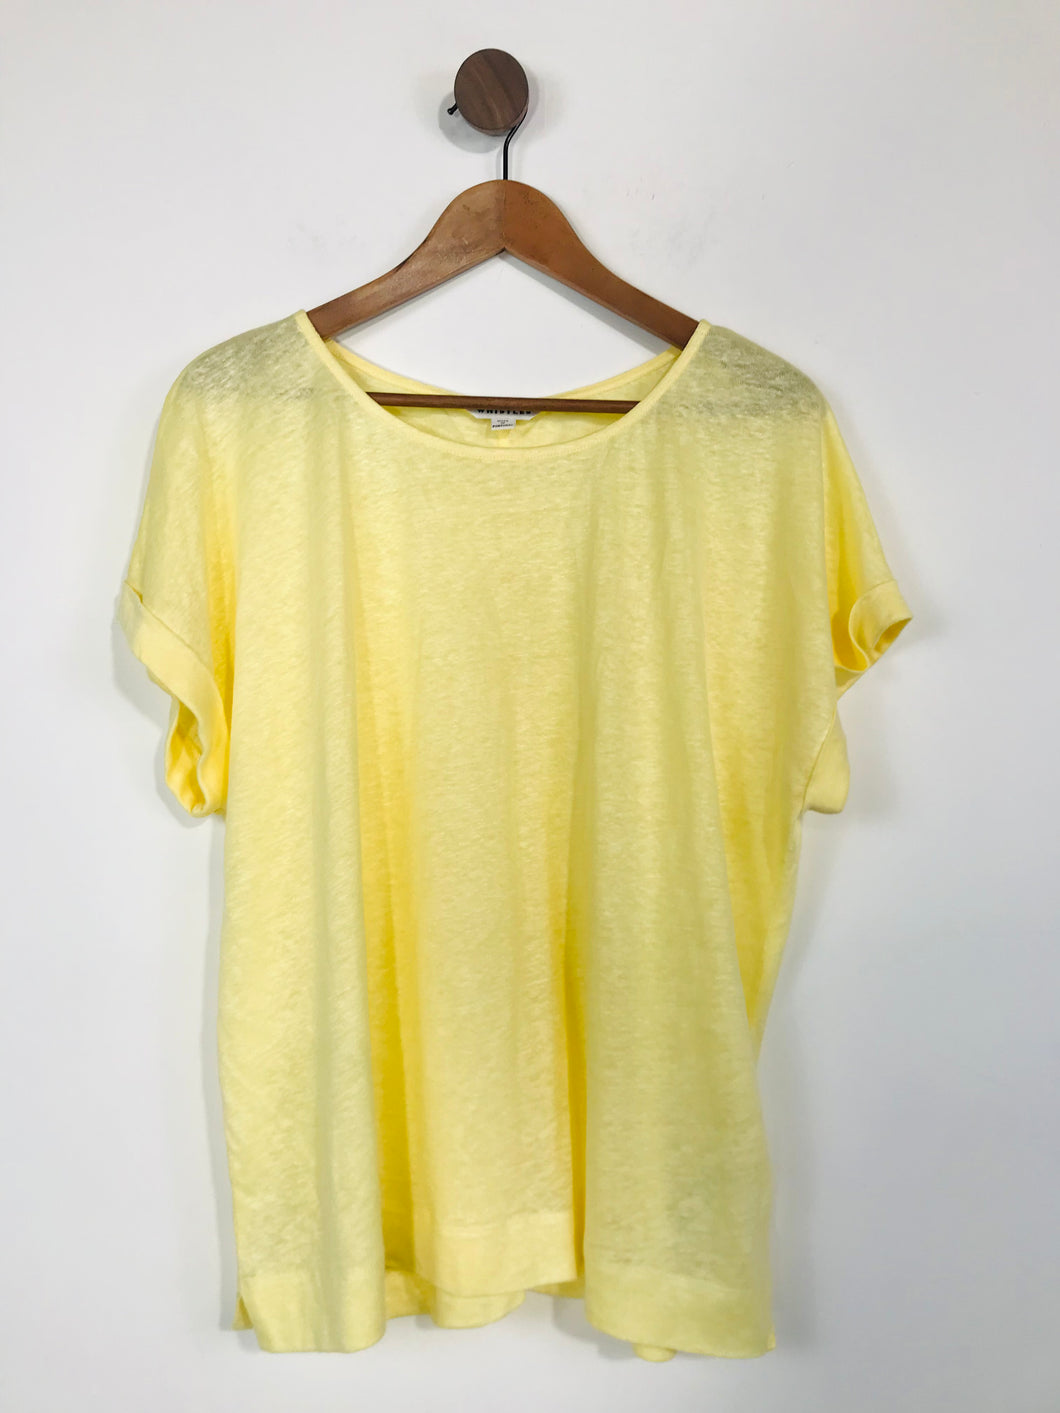 Whistles Women's Linen Lightweight T-Shirt | M UK10-12 | Yellow